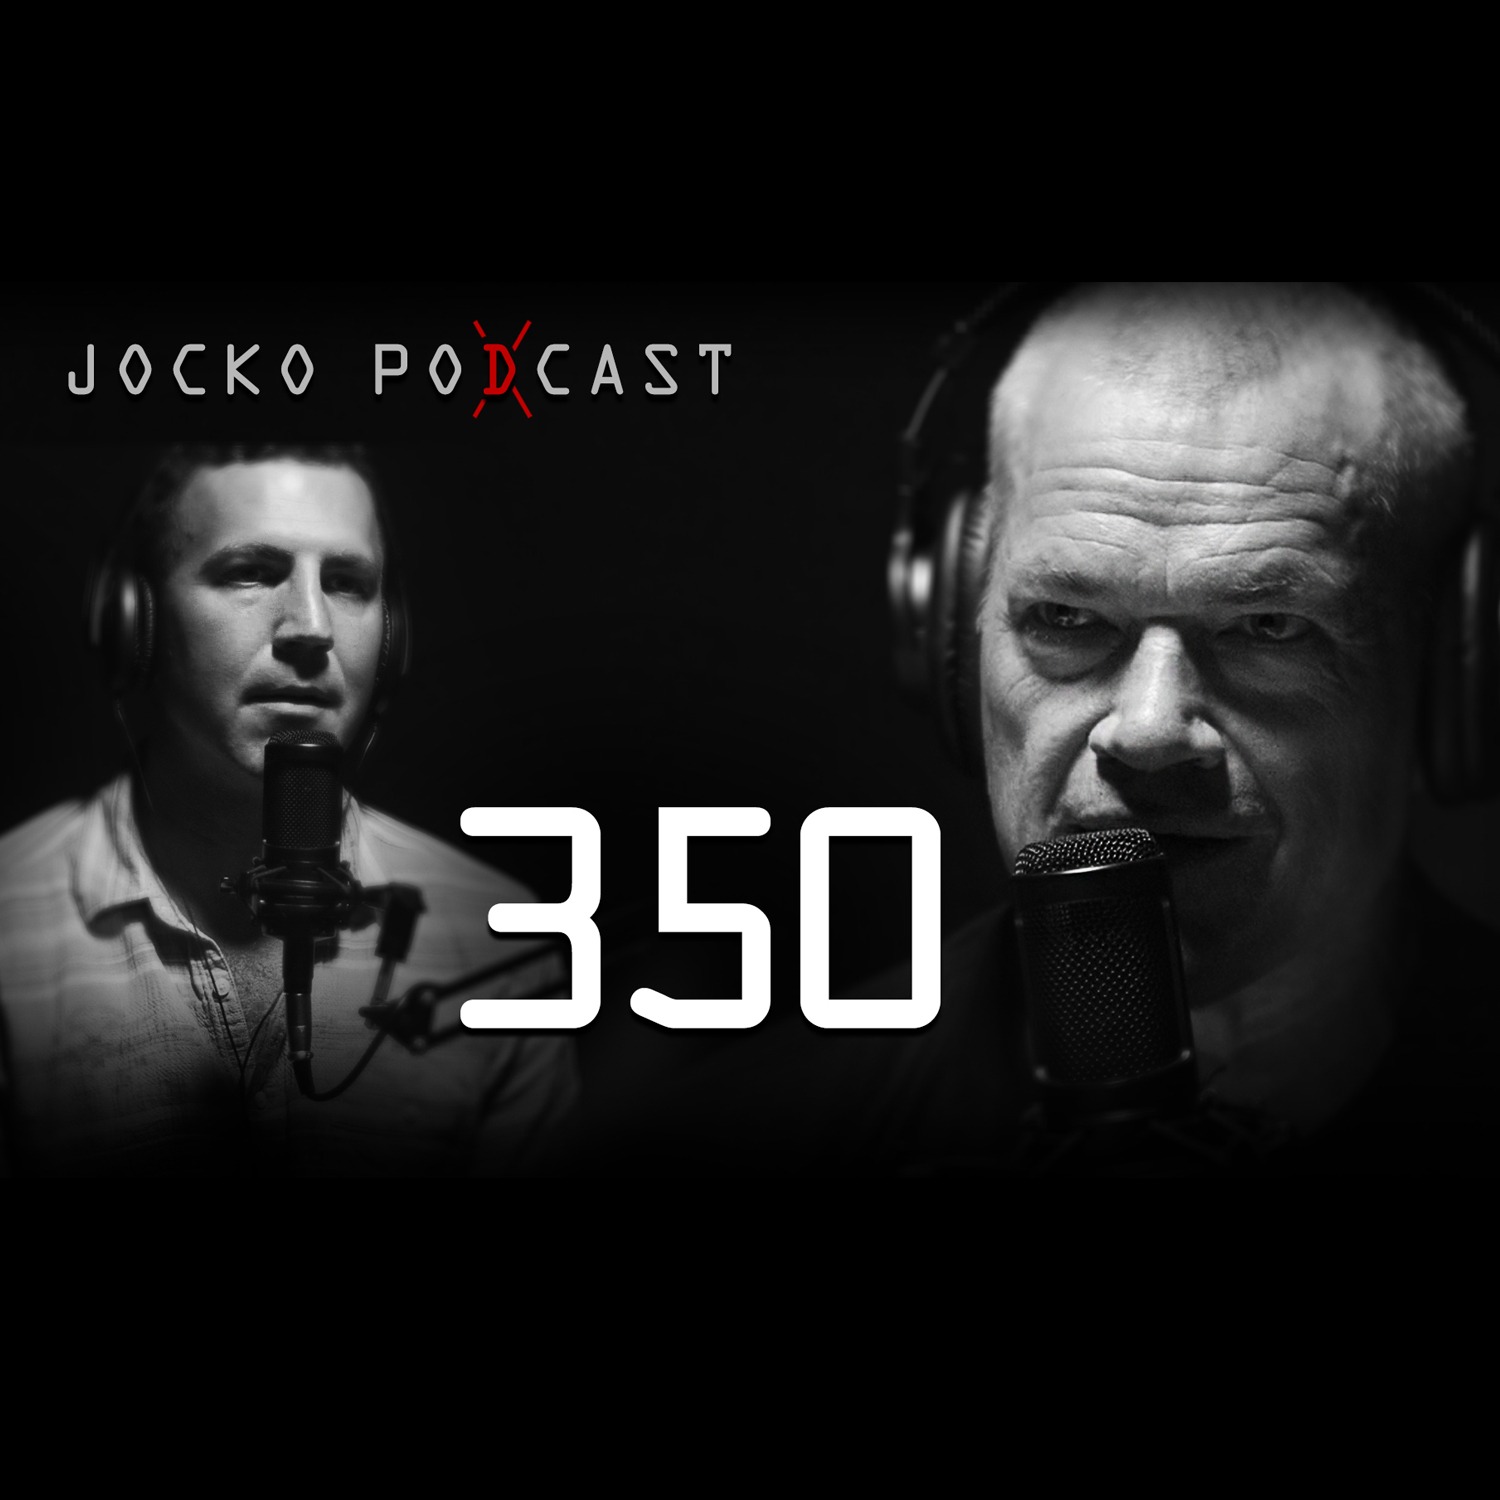 Jocko podcast 381